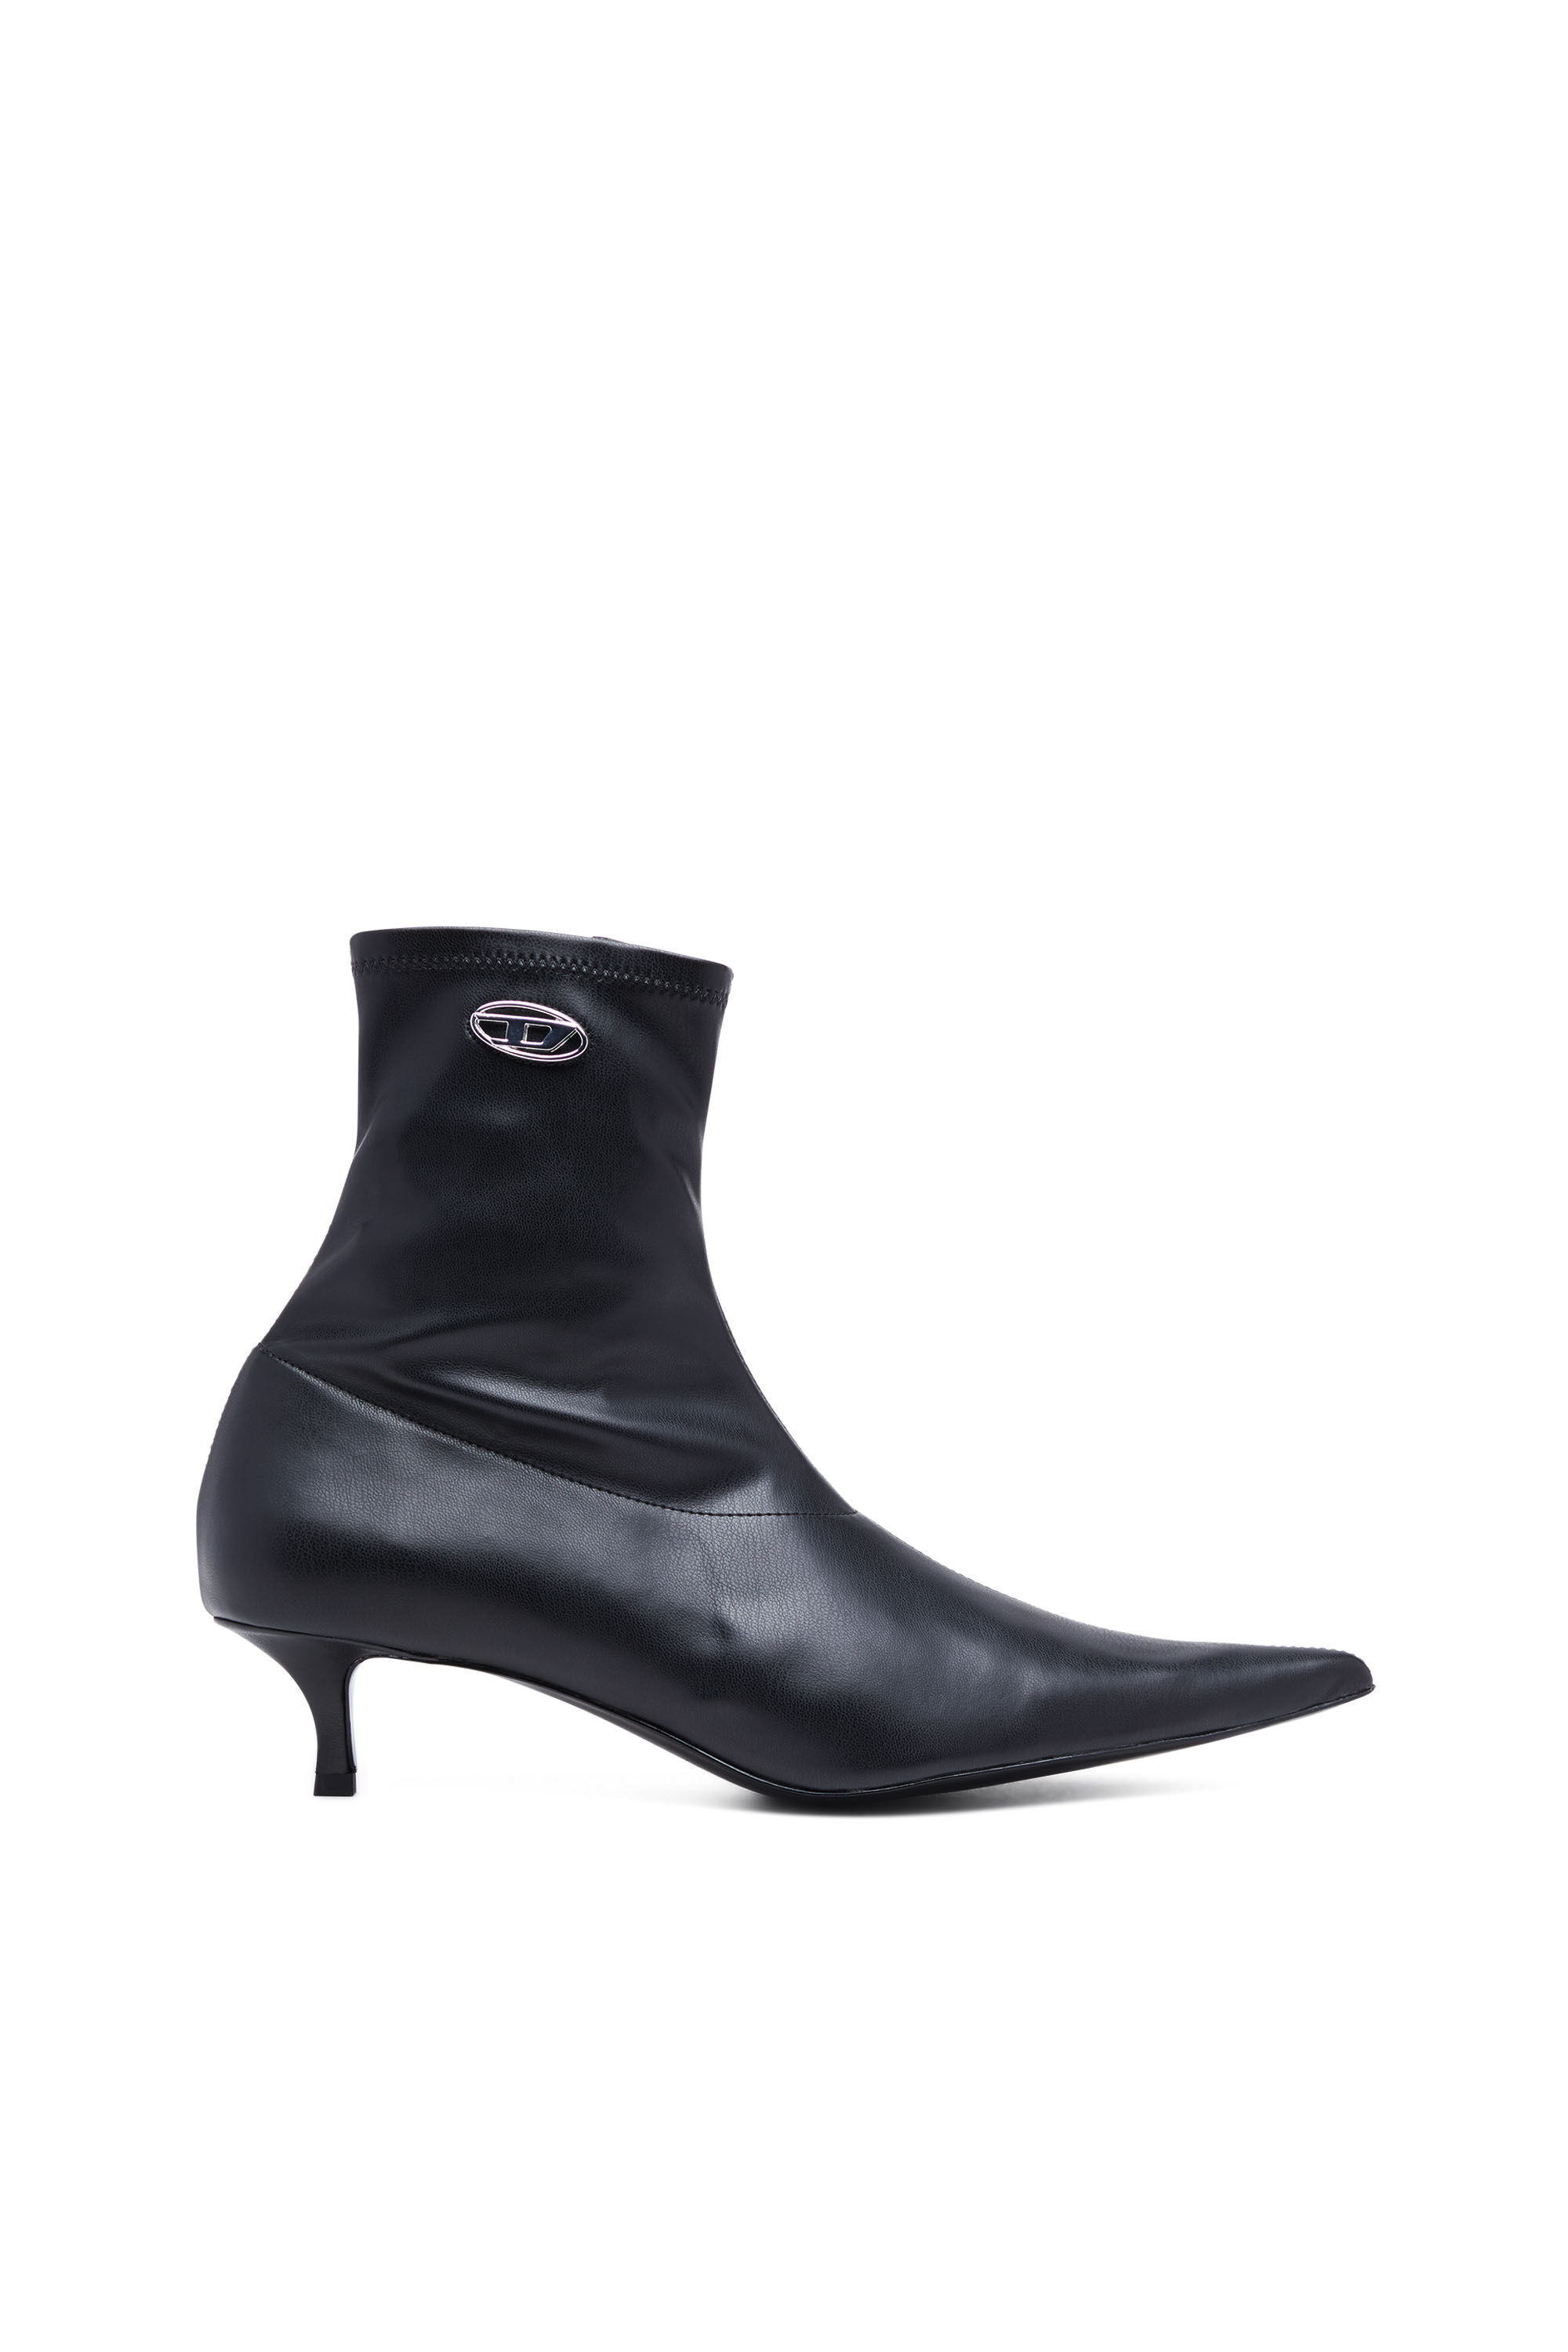 ALFANI WOMENS BLACK Comfort Goring Cecee Pointed Toe Kitten Heel Boots 7 M  £37.92 - PicClick UK